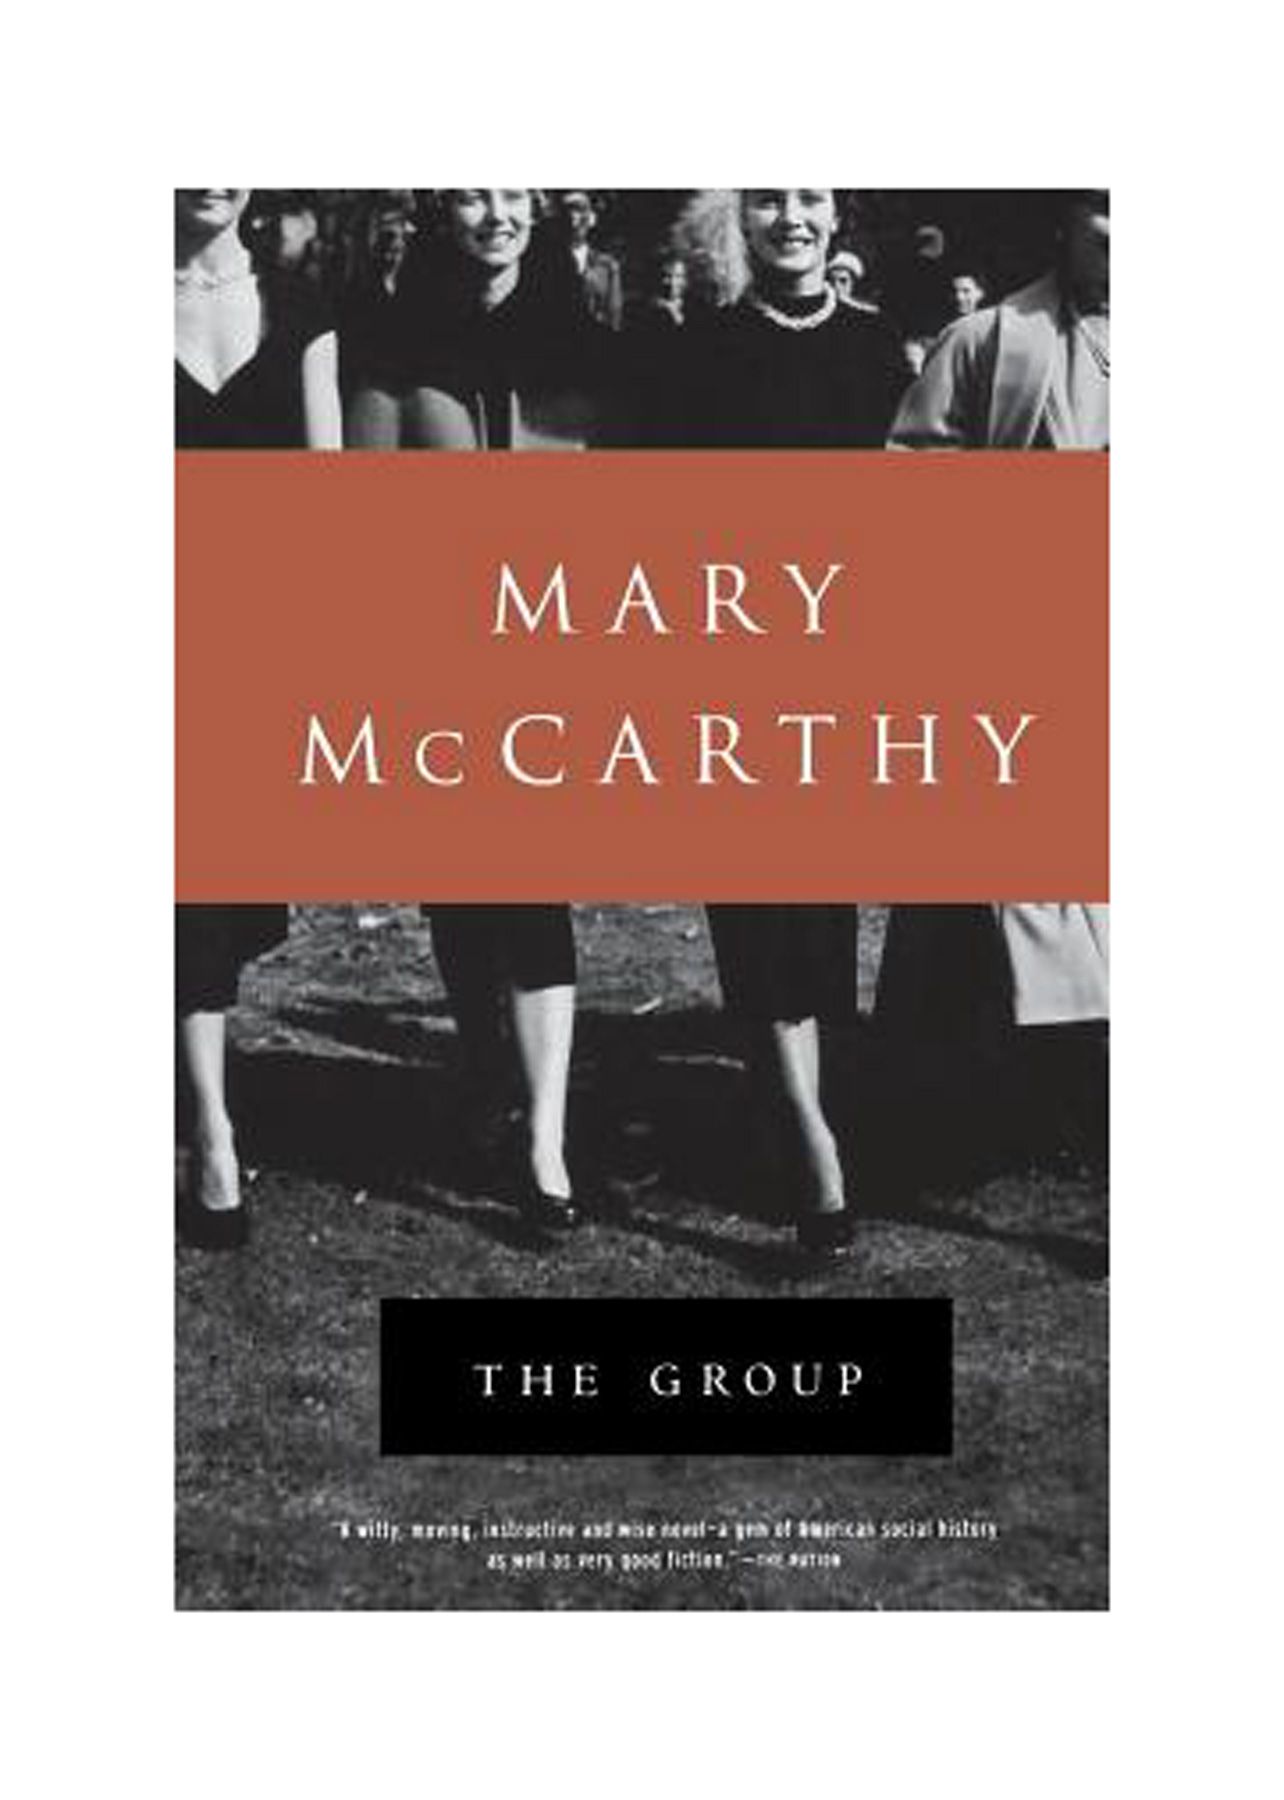 Head raamatud, mida lugeda 20ndates eluaastates: Mary McCarthy 'Rühm'.